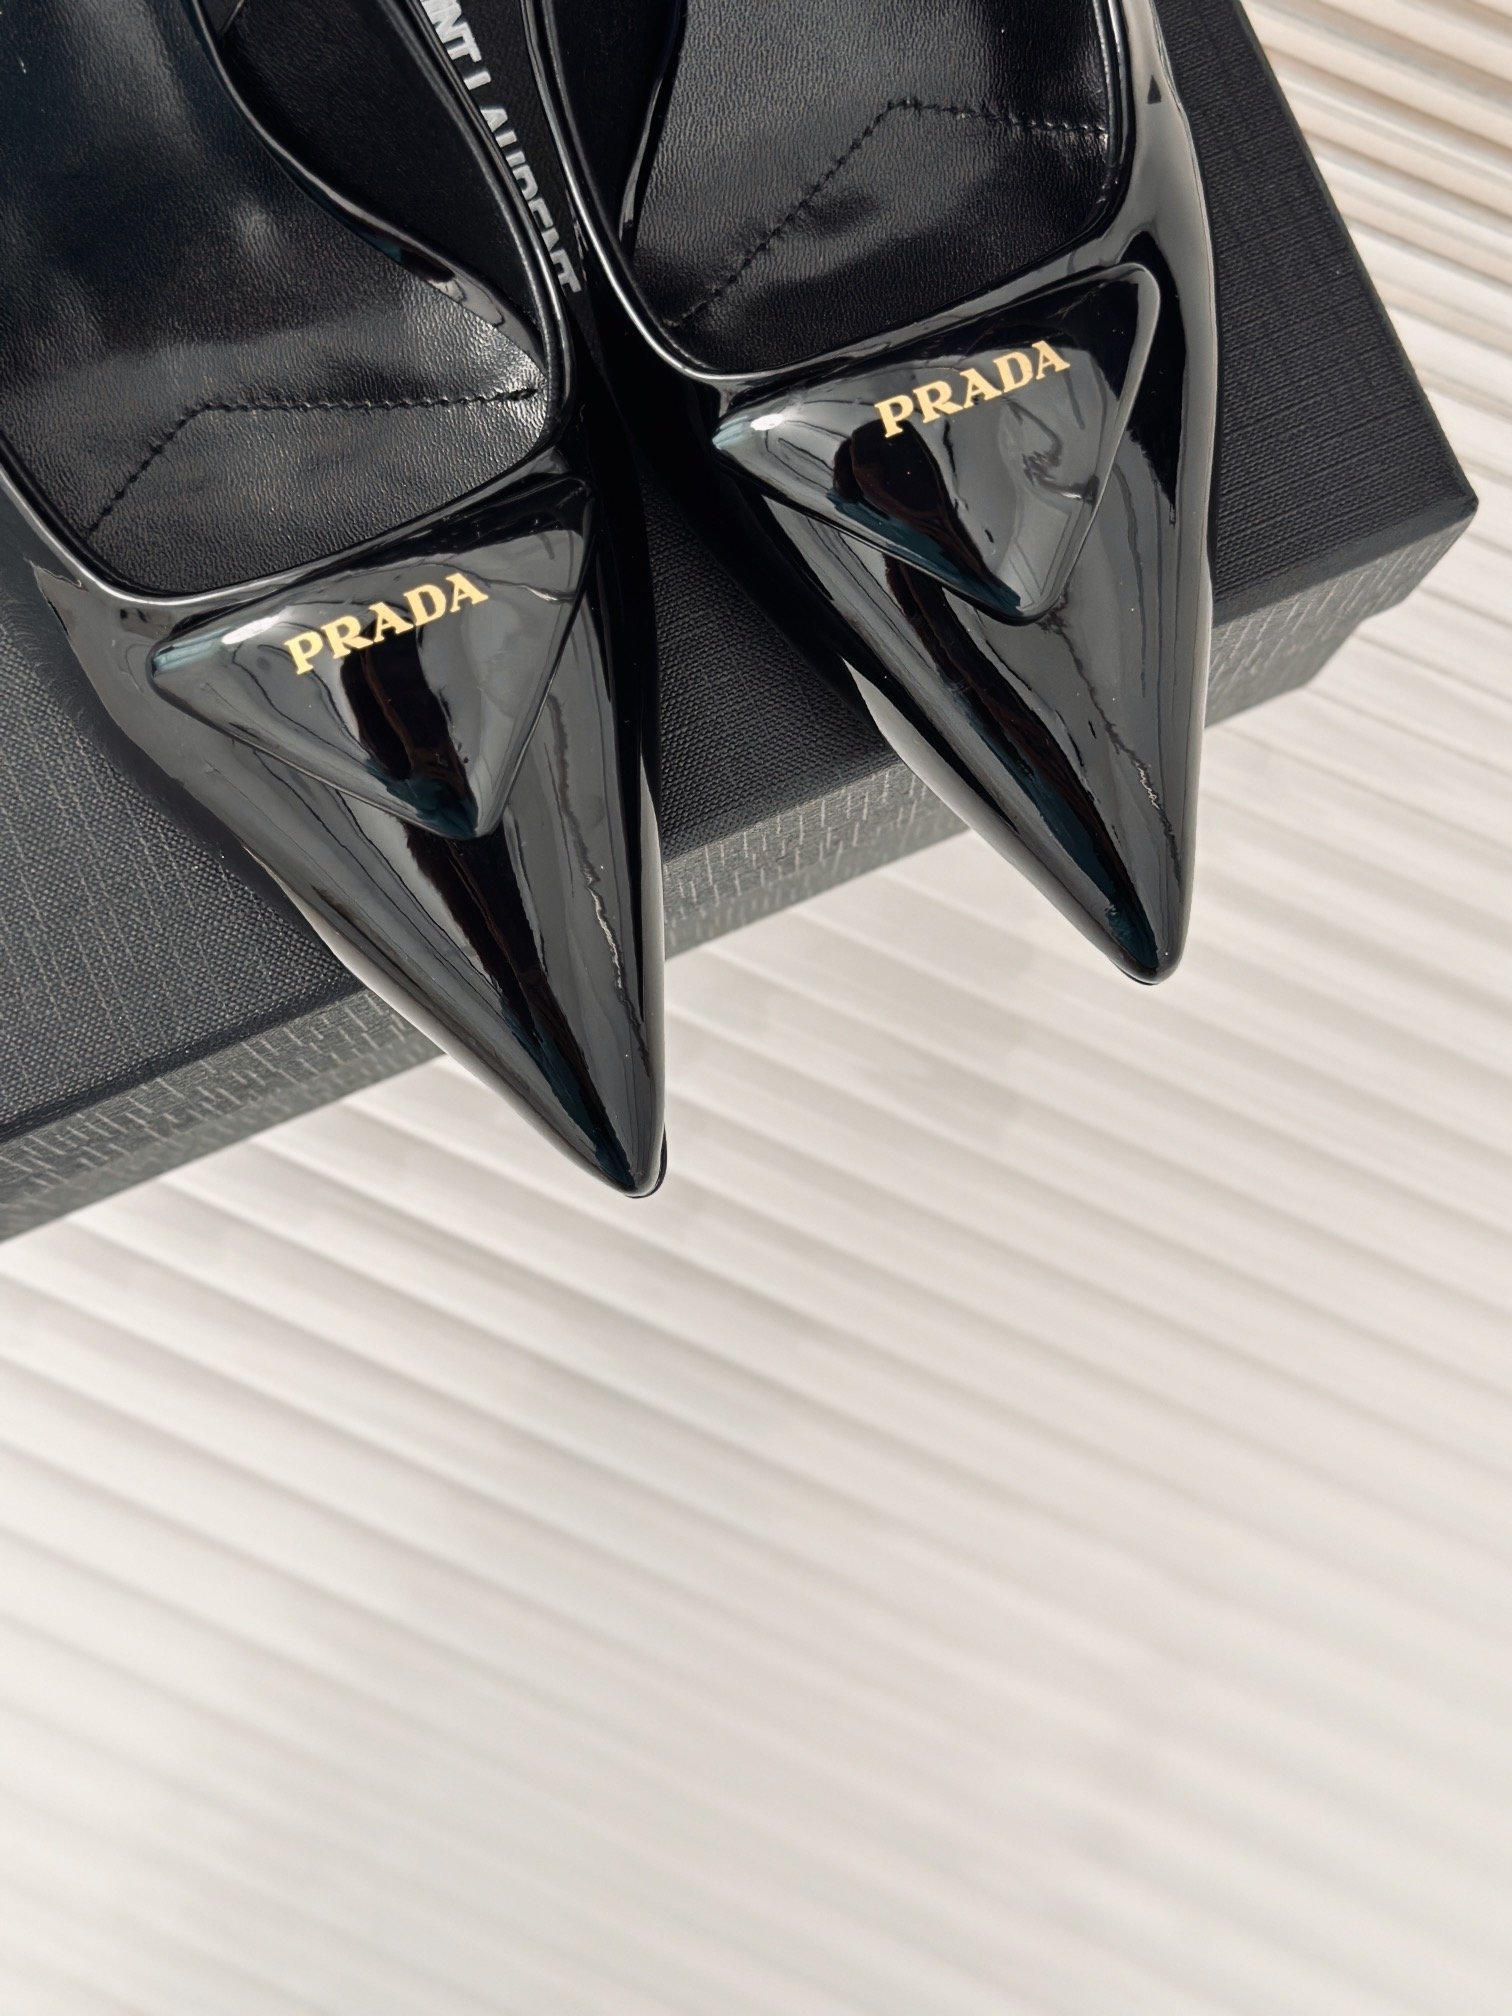 PRADA/普拉达经典春夏三角标凉鞋单鞋系列简单的设计大概就是它最让人喜欢的点不是烂大街的那种很有自己的